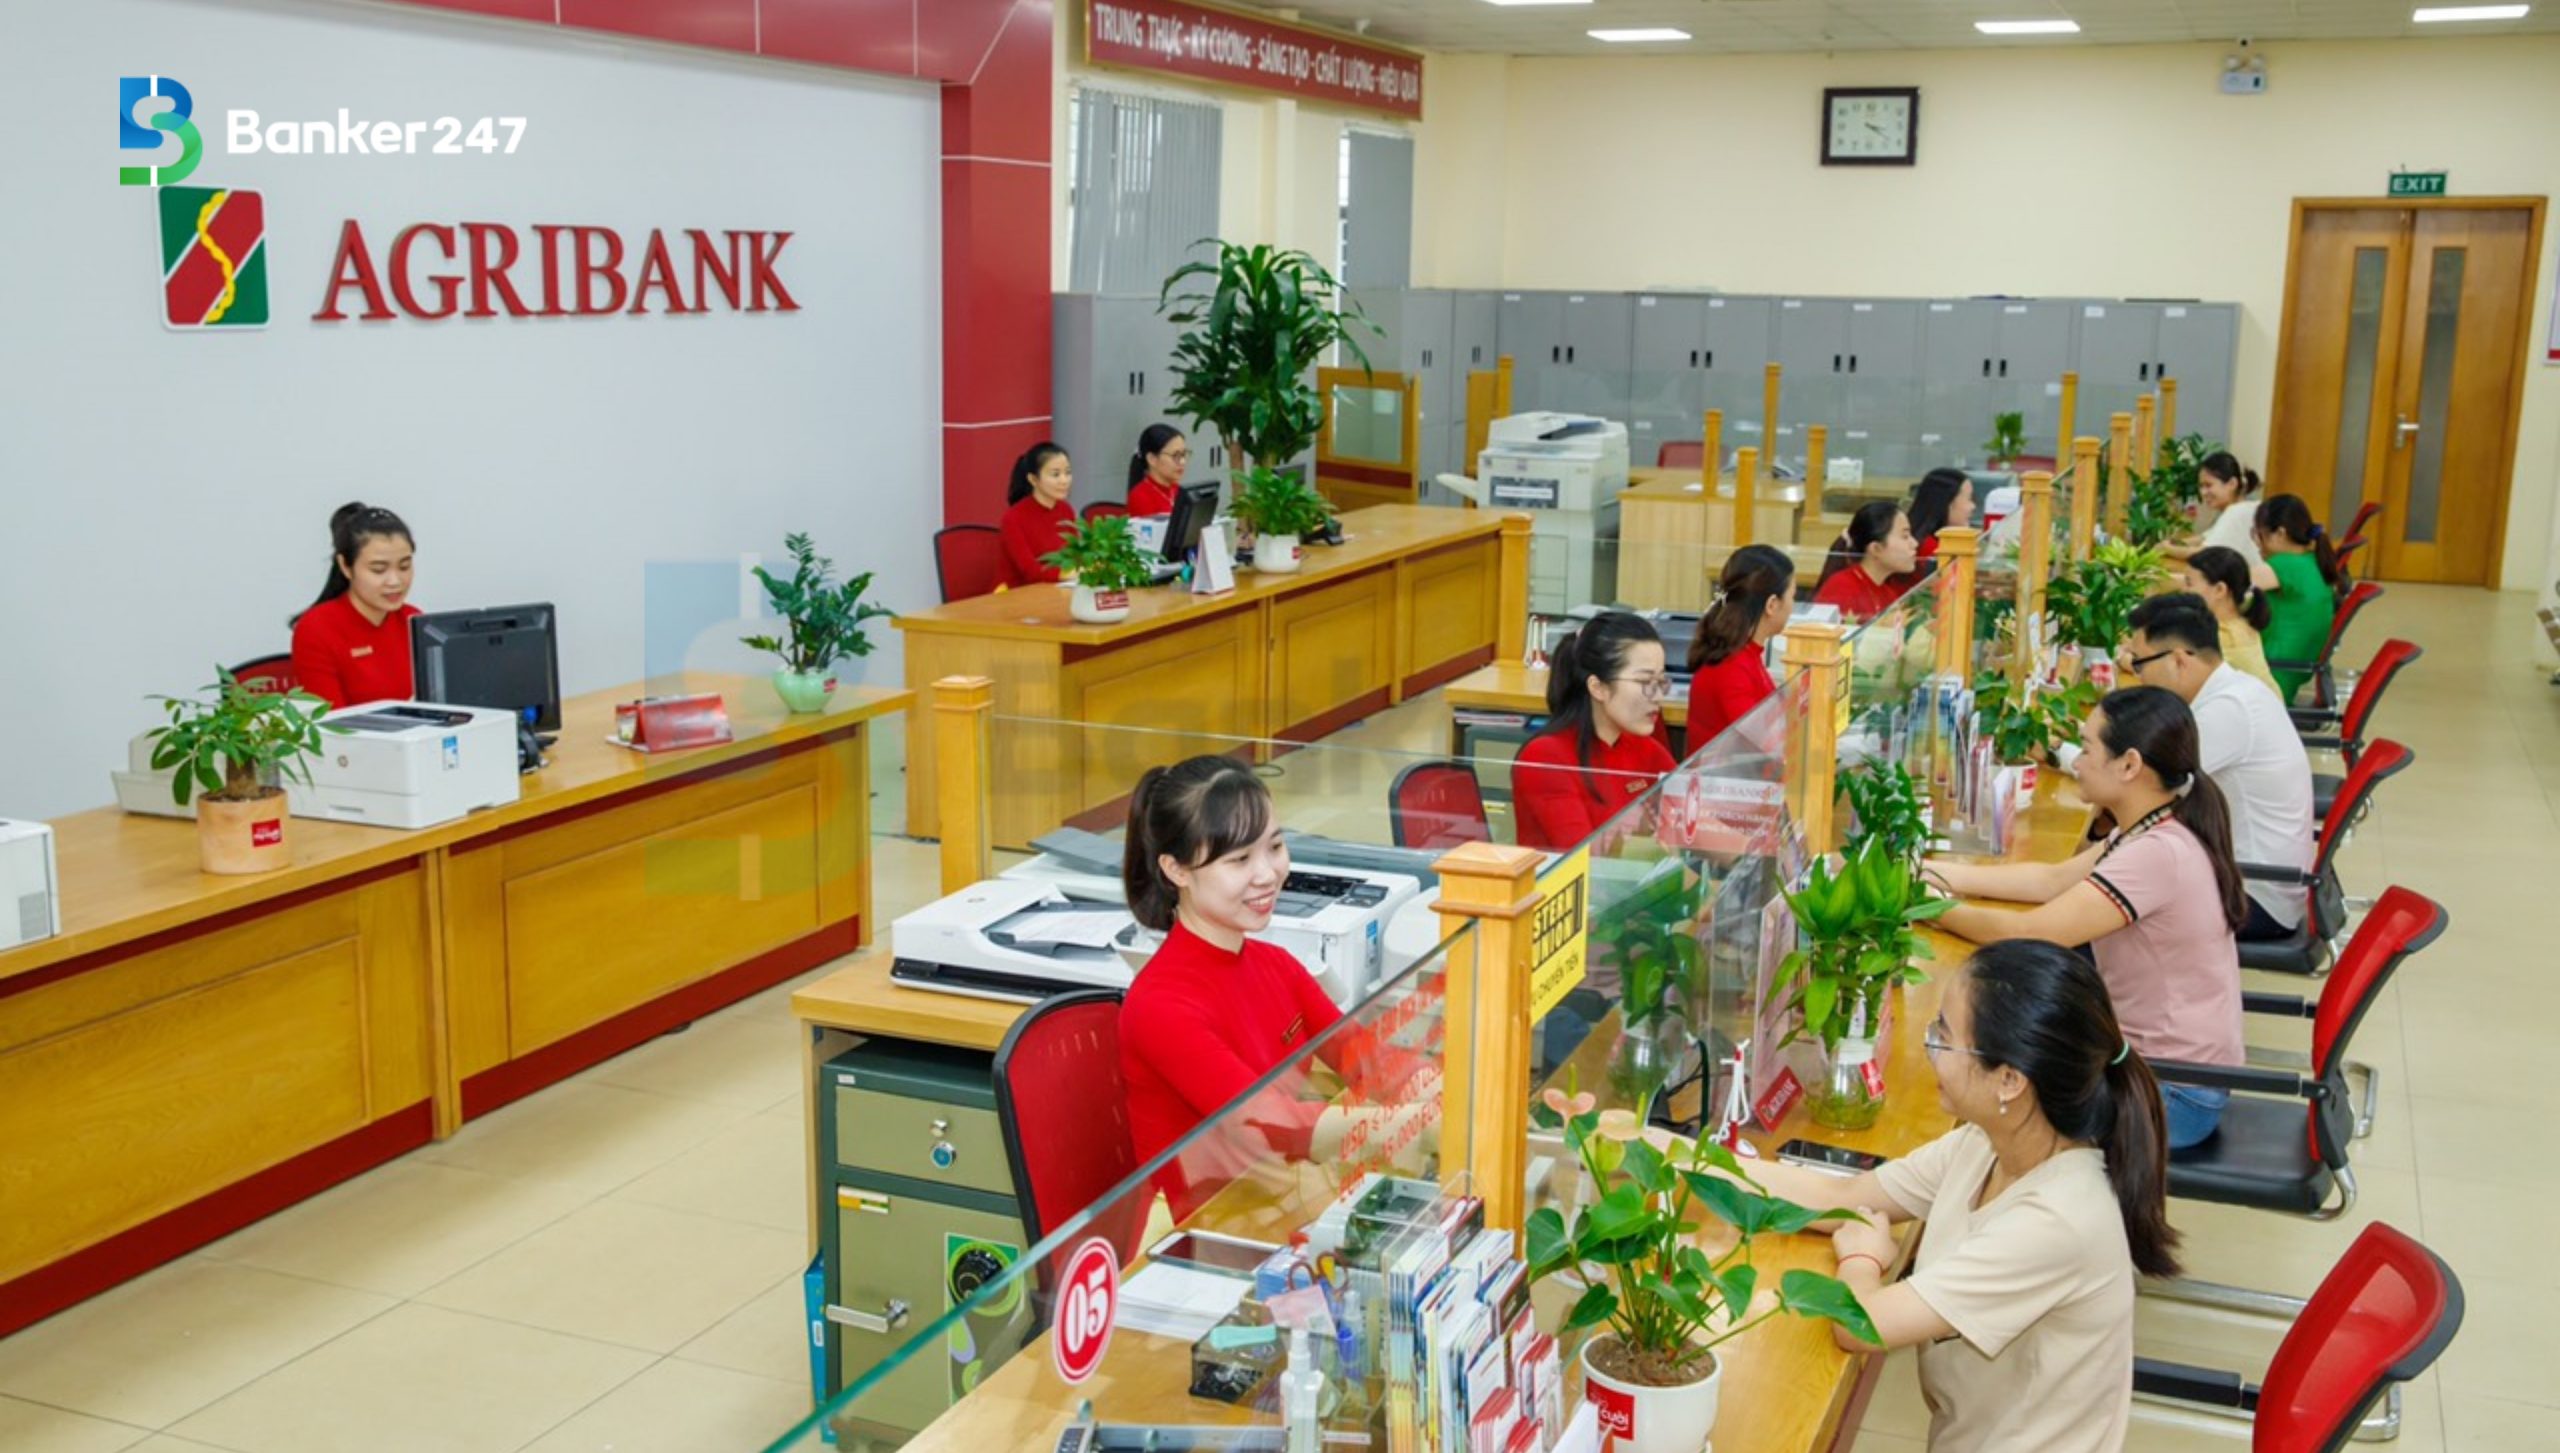 Có nợ xấu có vay vốn ngân hàng Agribank thế chấp sổ đỏ được không